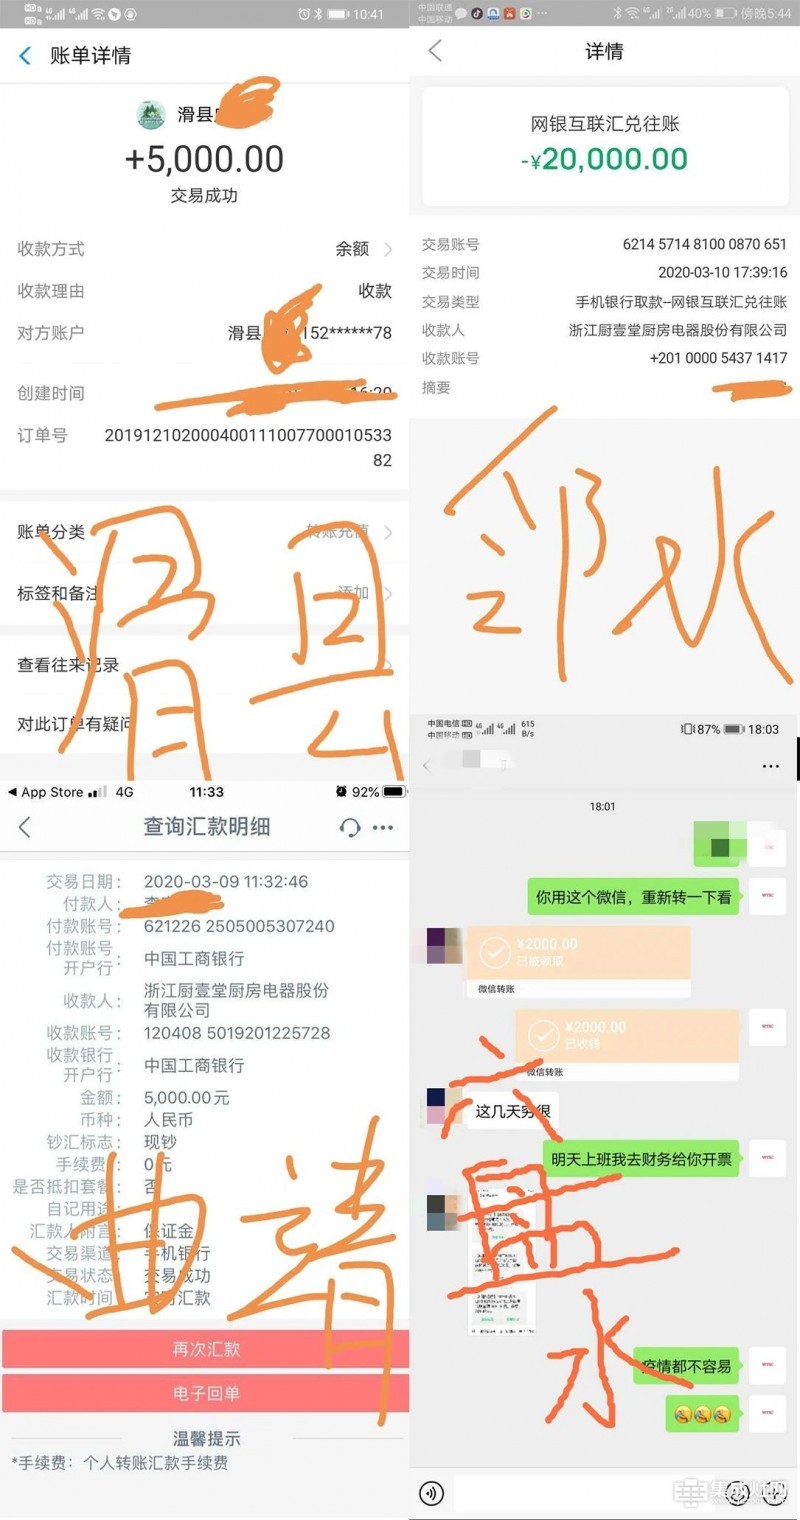 厨壹堂集成灶开启线上直播招商会 3月20日诚邀同屏